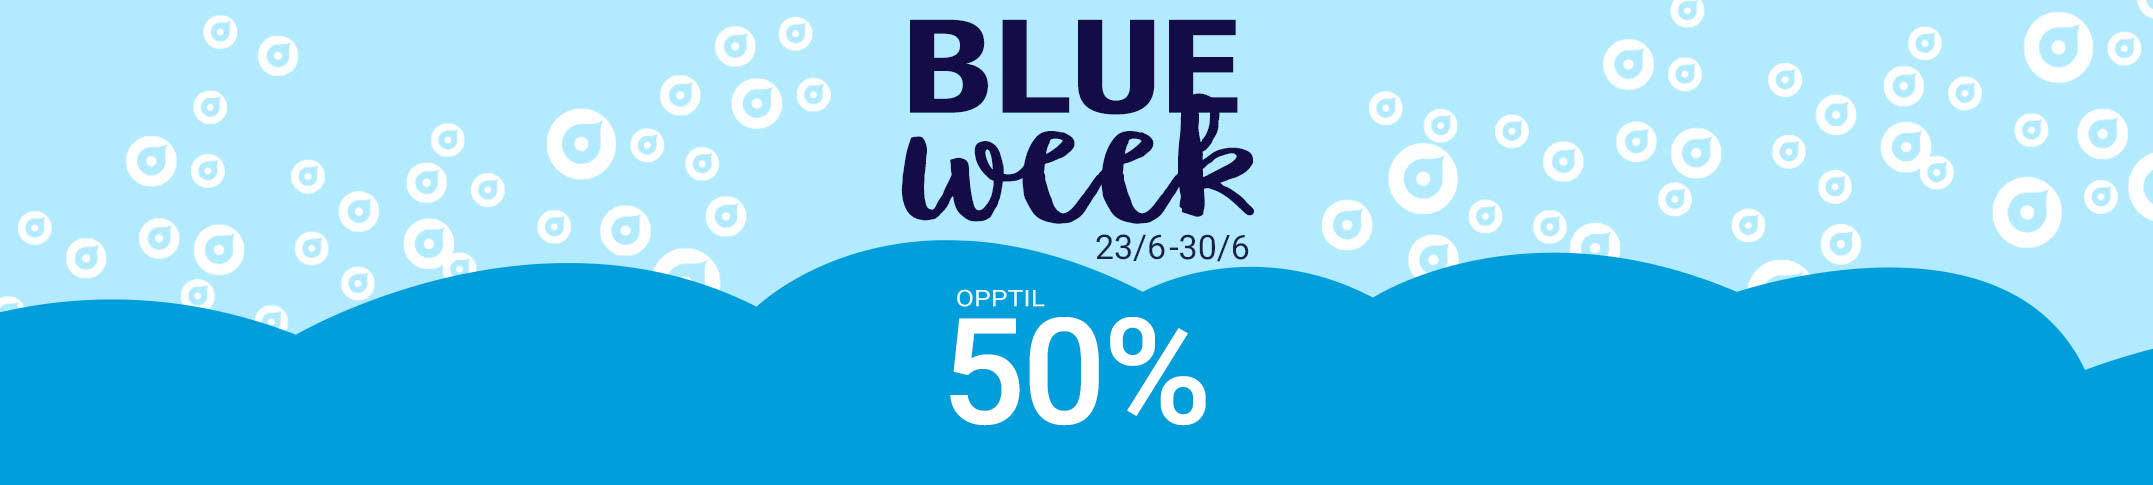 💙 Blue Week - Opptil 50% rabatt! | Smartphoto